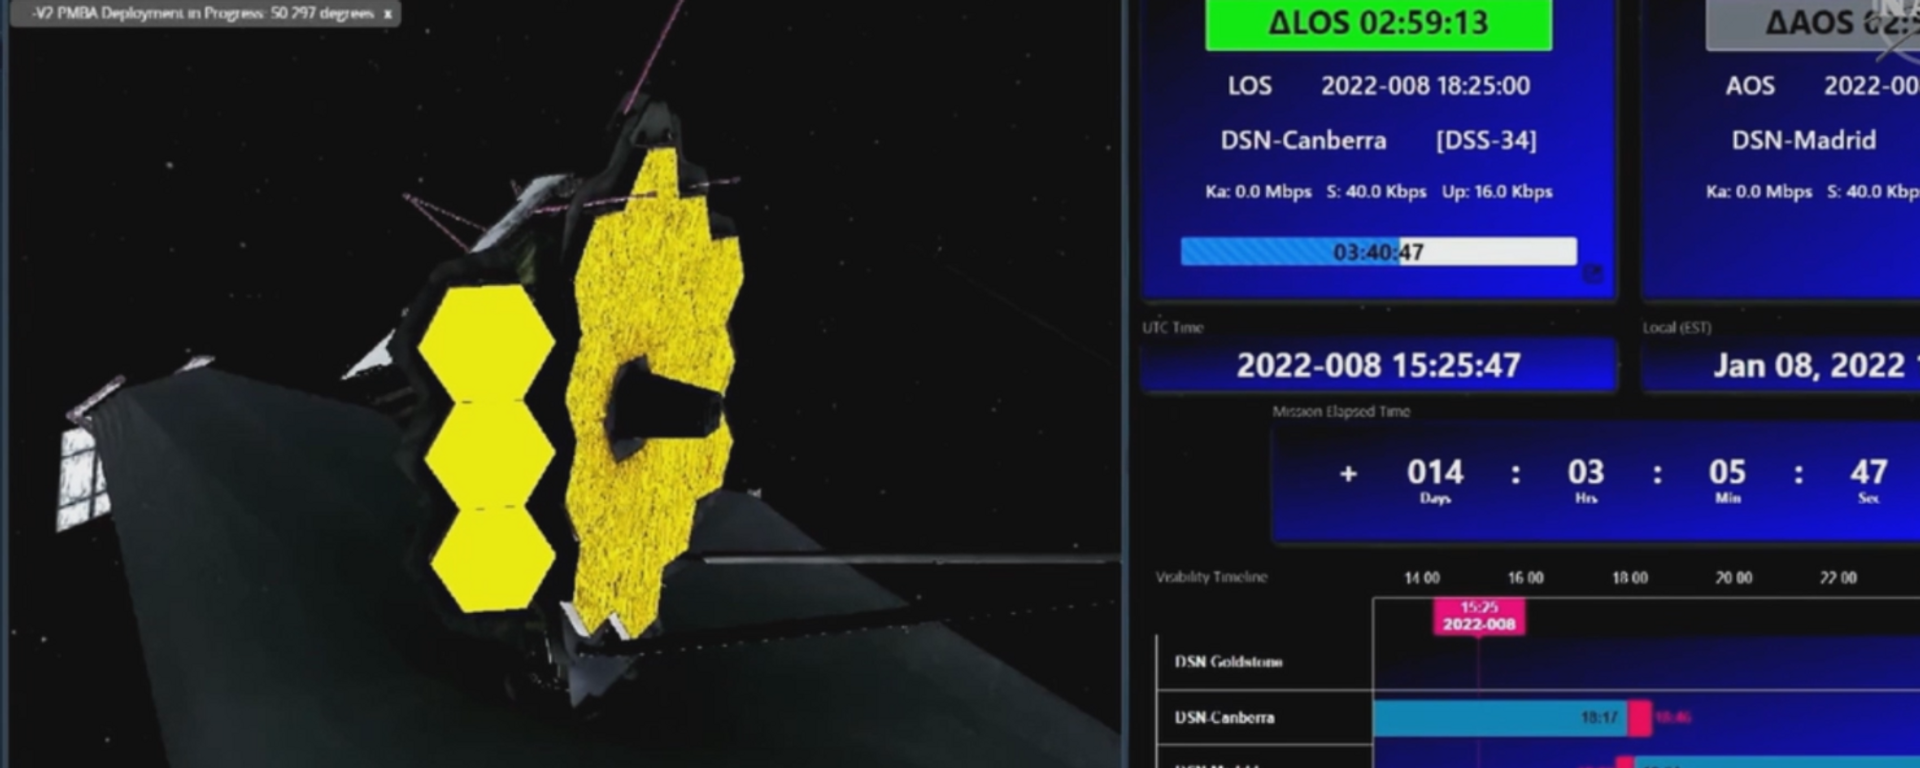 Video: el telescopio James Webb abre por completo su ojo de oro, listo para observar el universo - Sputnik Mundo, 1920, 09.01.2022